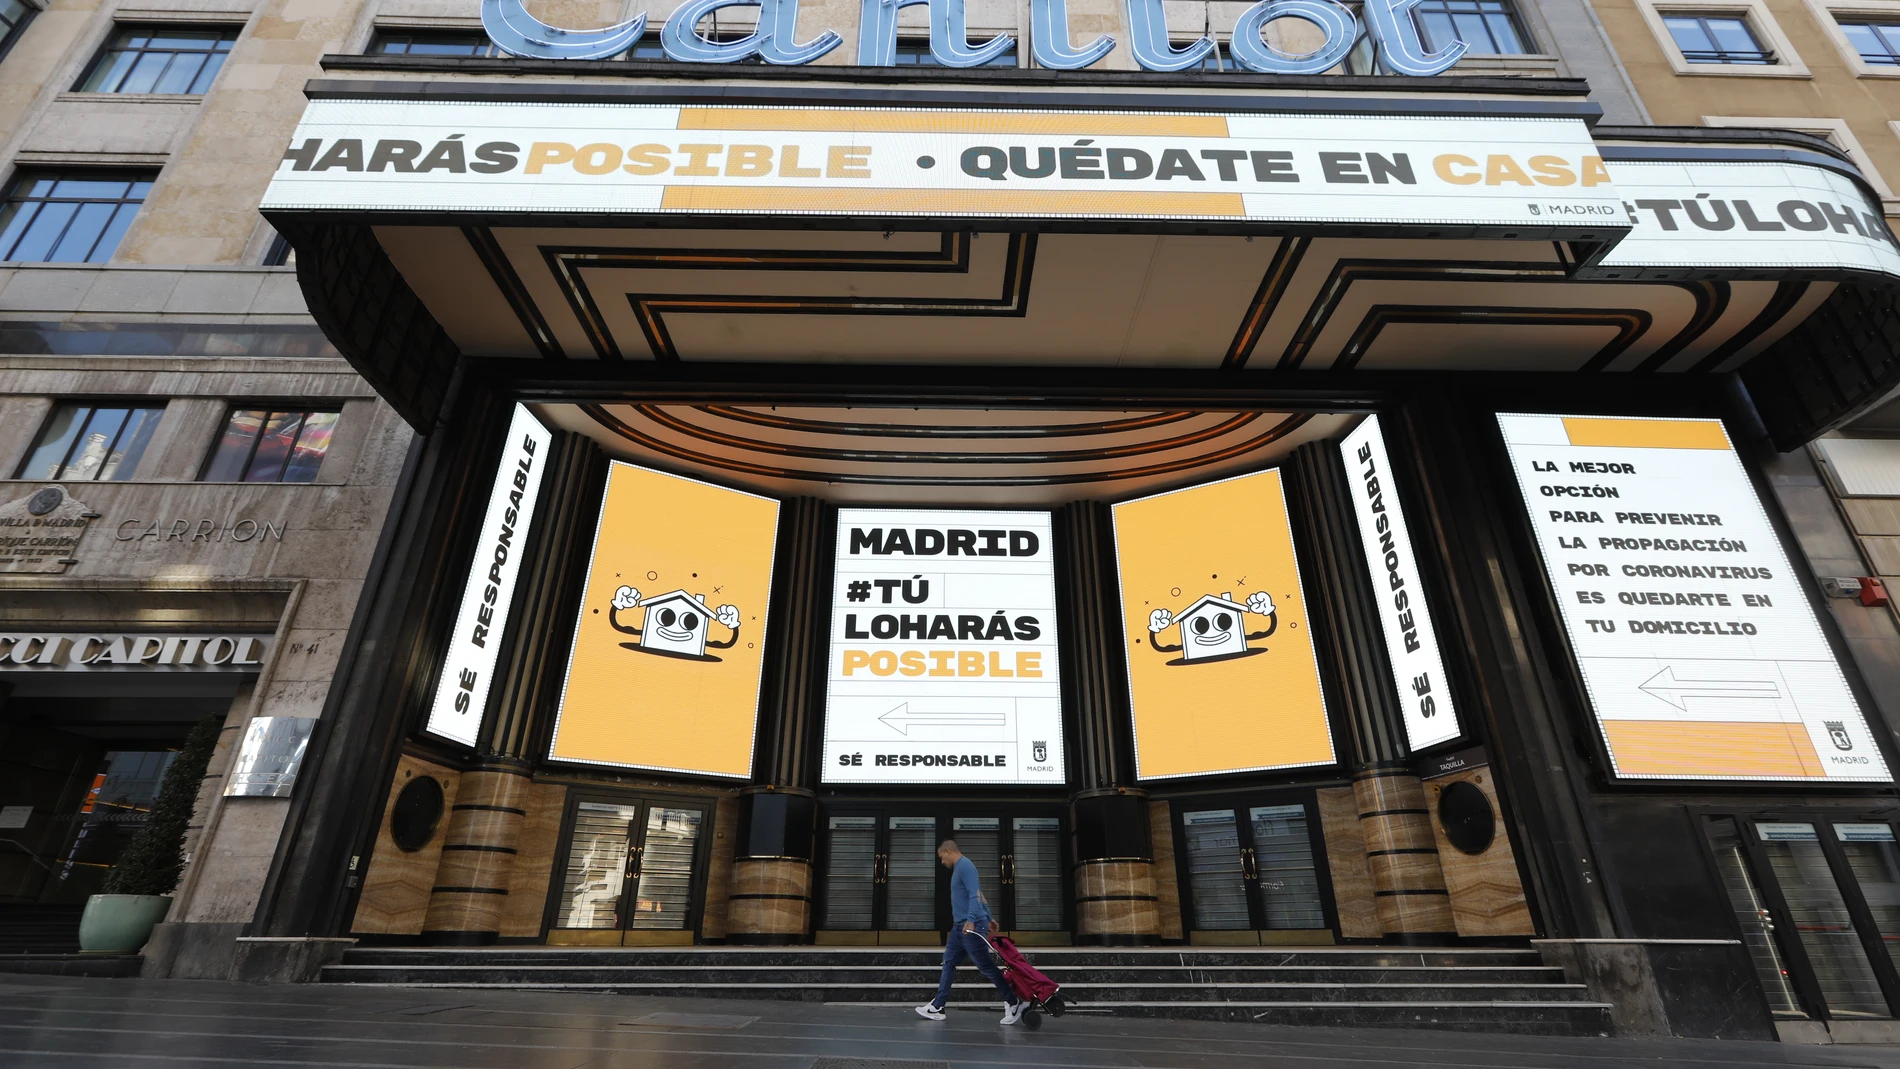 El cine Capitol de Madrid, en Gran Vía, permanece cerrado por la crisis del coronavirus